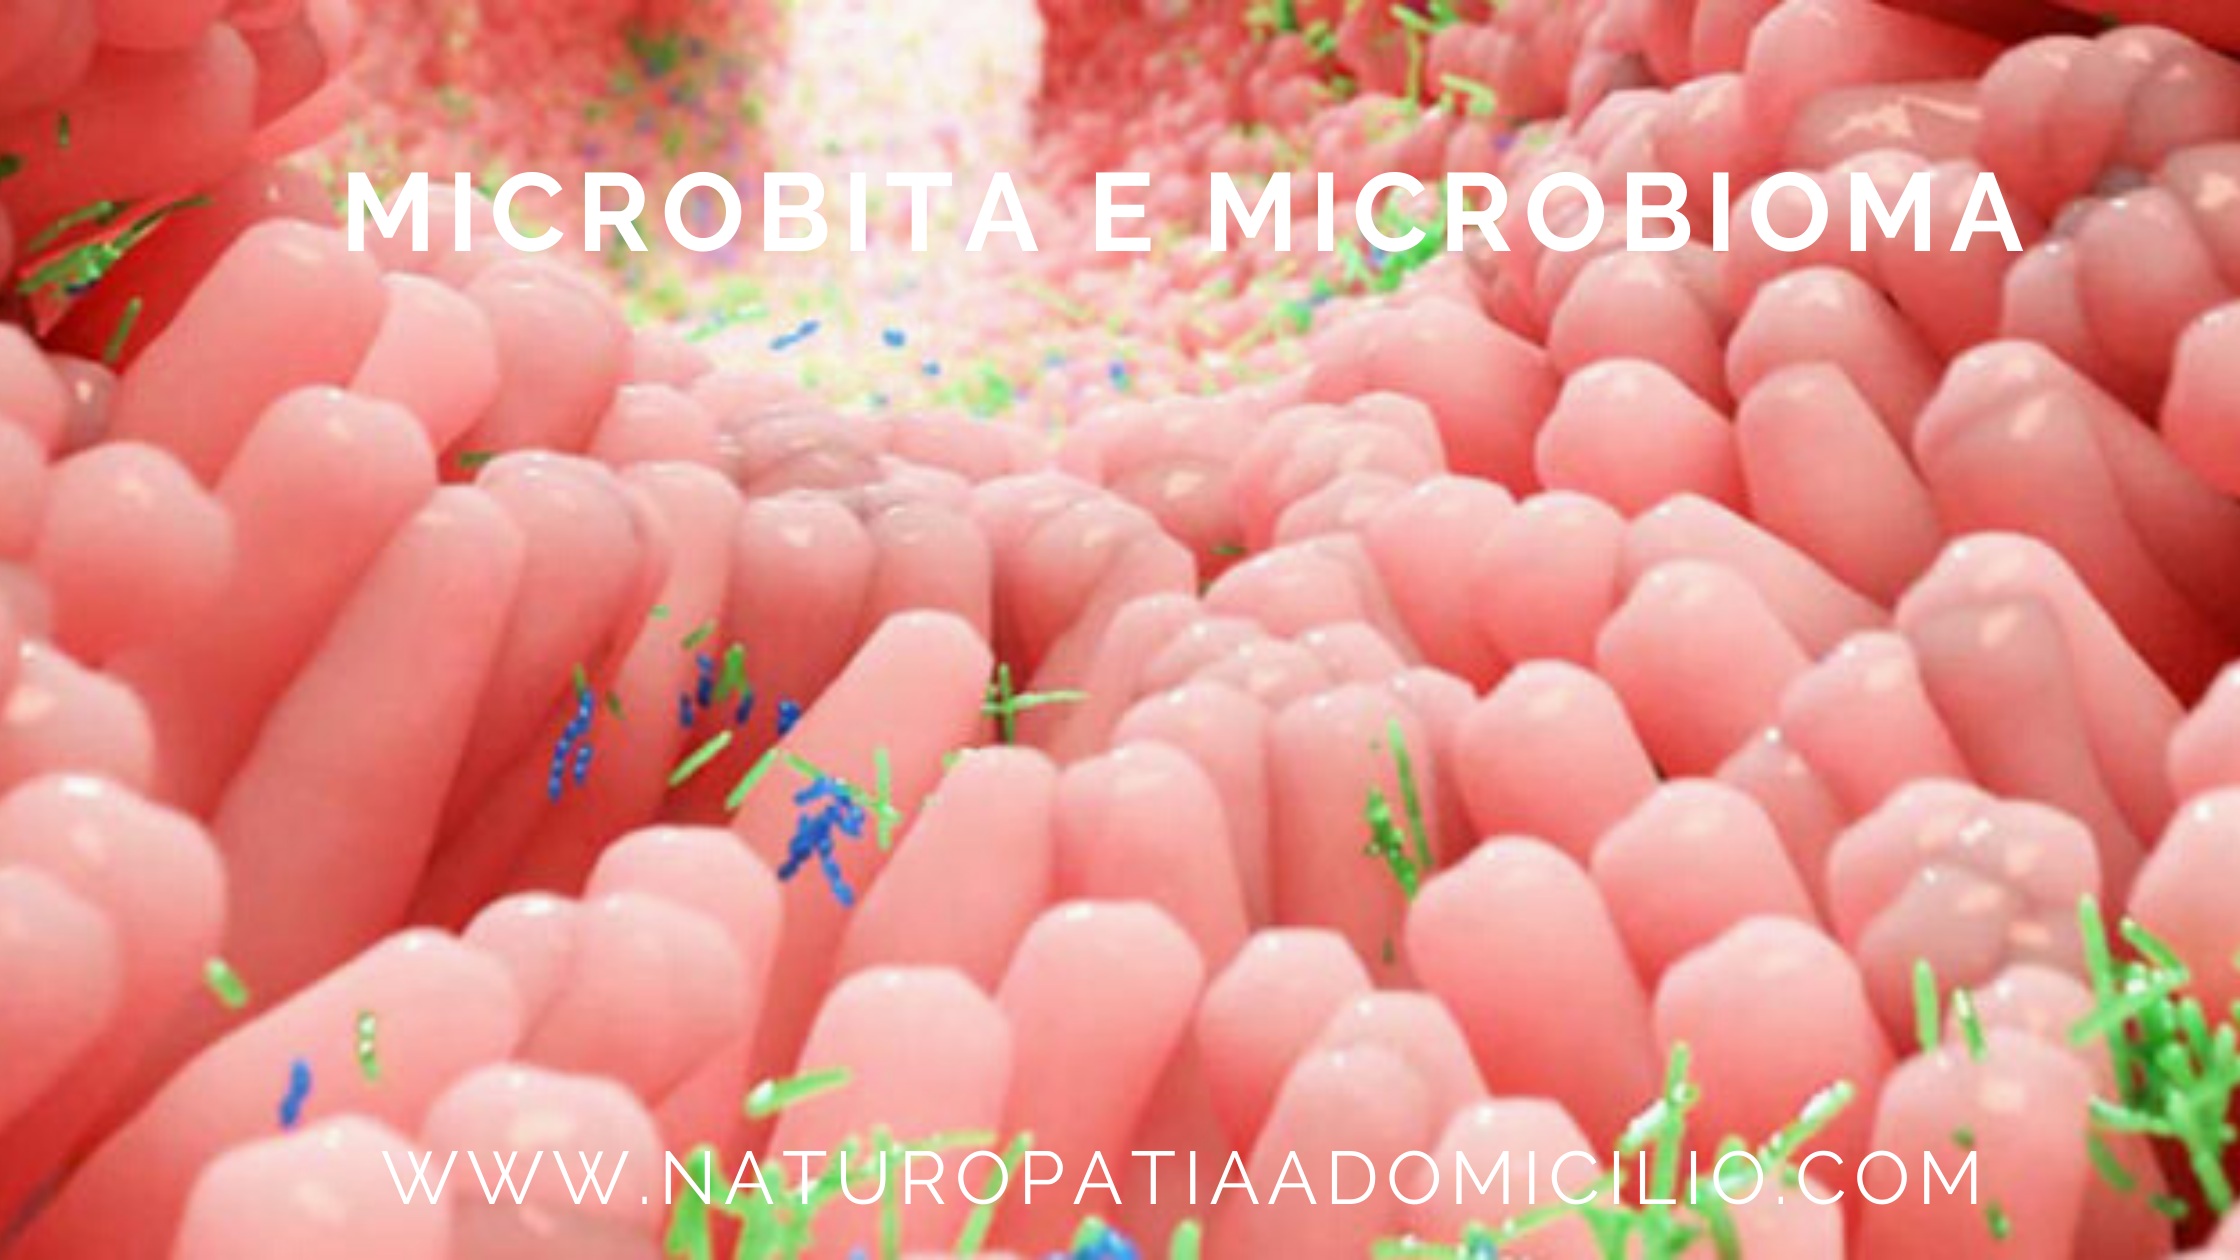 Microbiota, Microbioma